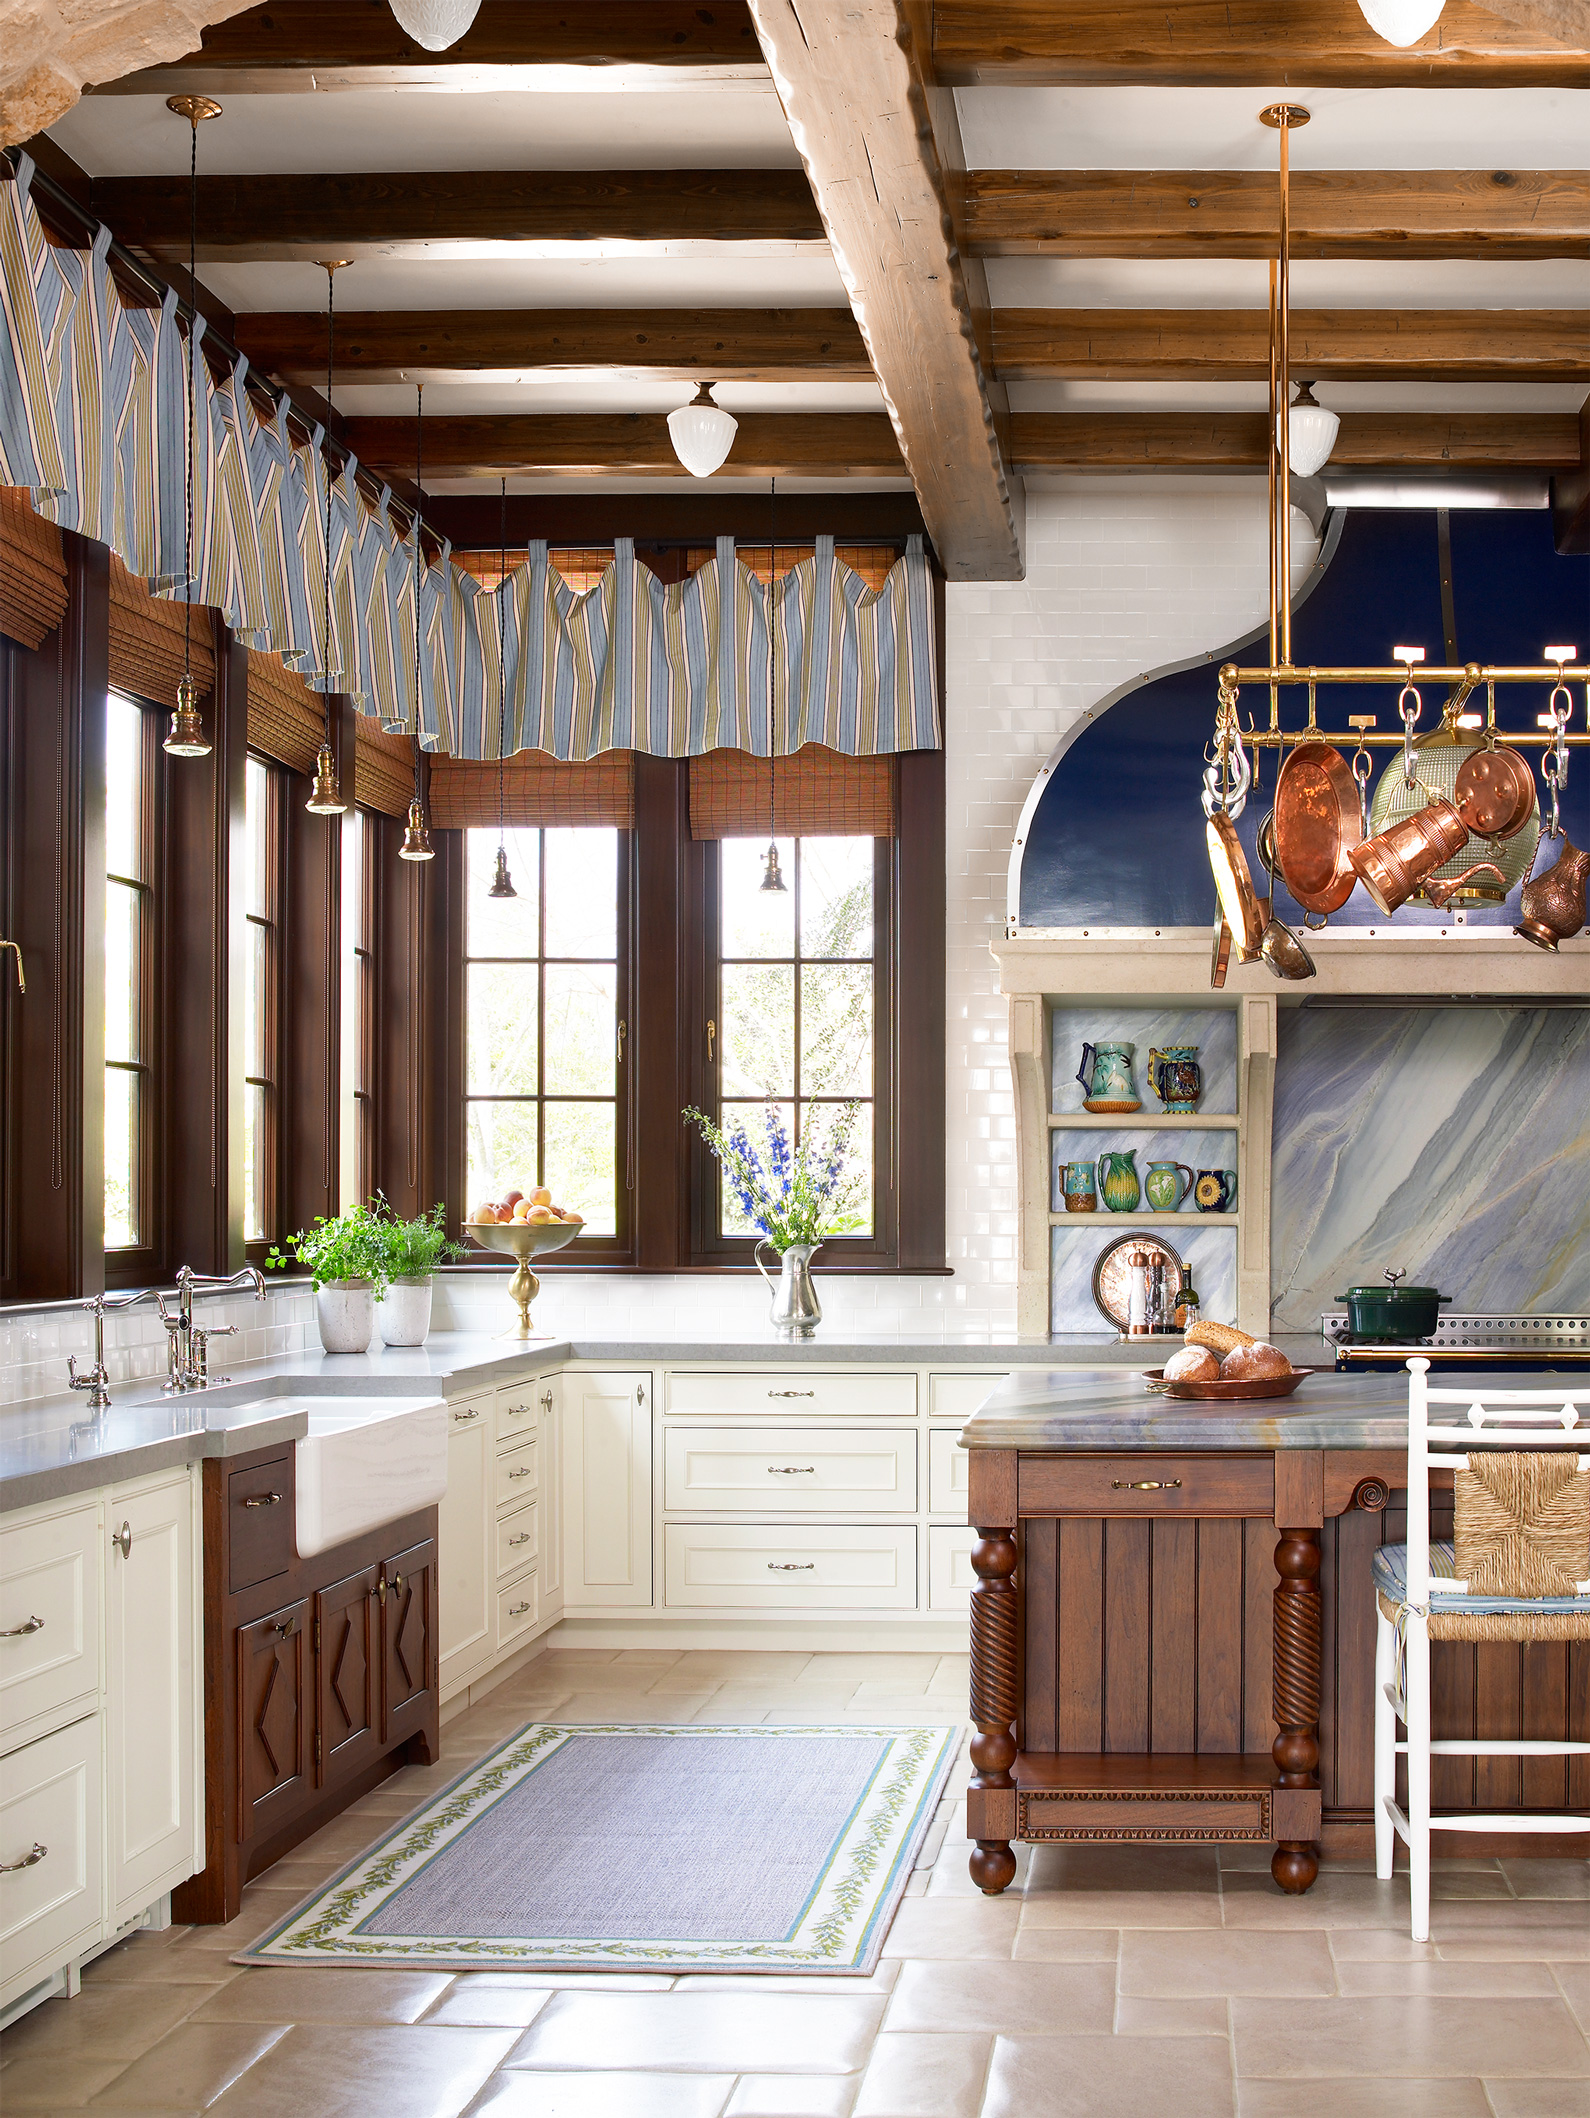 Vật liệu gỗ mộc tối màu dường như đang thống trị phòng bếp này, chính vì thế, một tấm rèm che kẻ sọc màu xanh dương và xám sẽ làm giảm đi sự thô cứng của nội thất, khiến phòng bếp phong cách Rustic trở nên mềm mại, duyên dáng hơn.